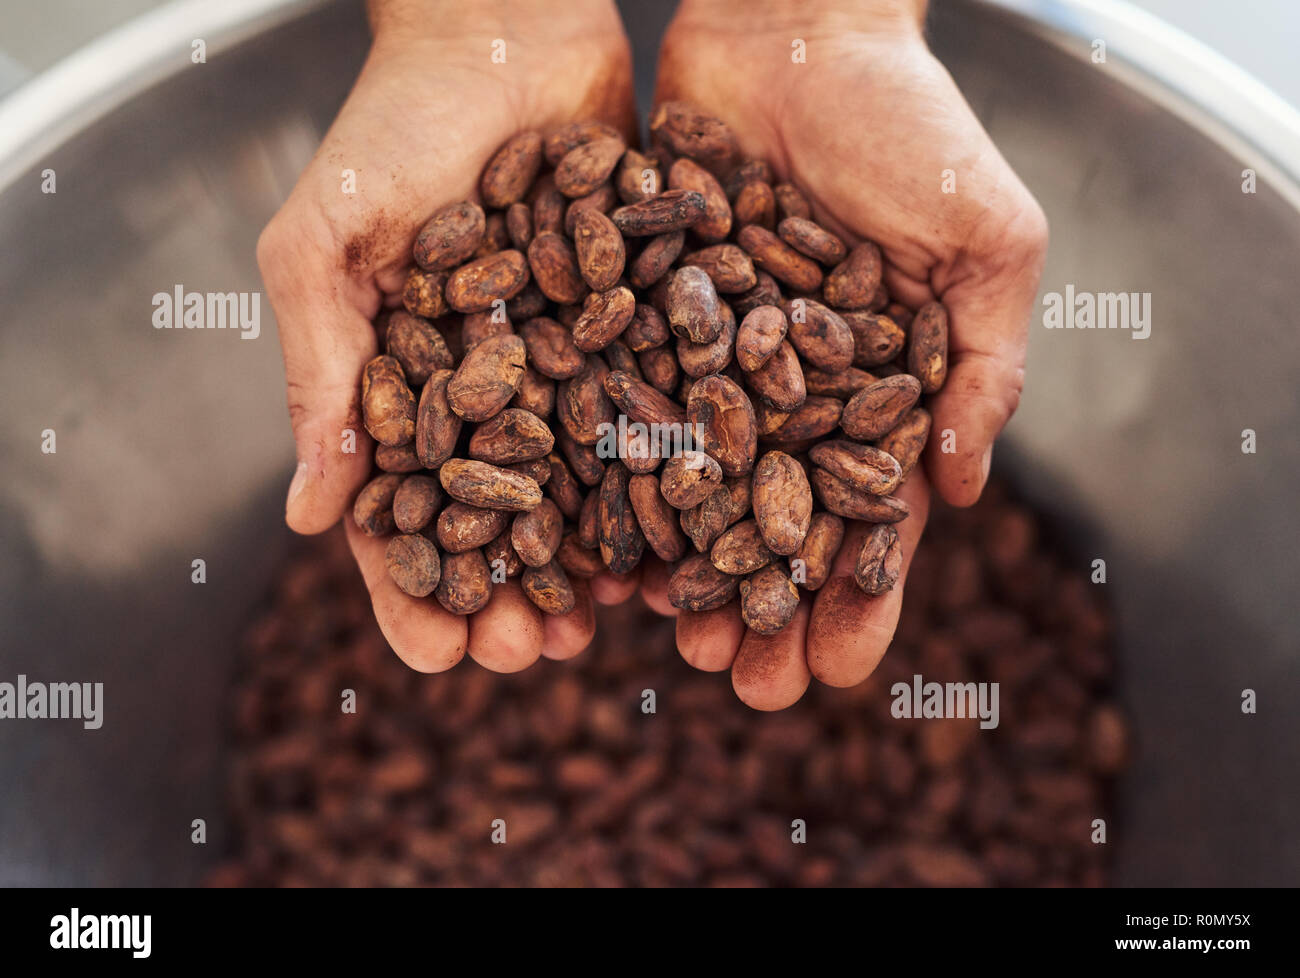 Travailleur ayant une poignée de haricots secs pour la préparation cocao Banque D'Images